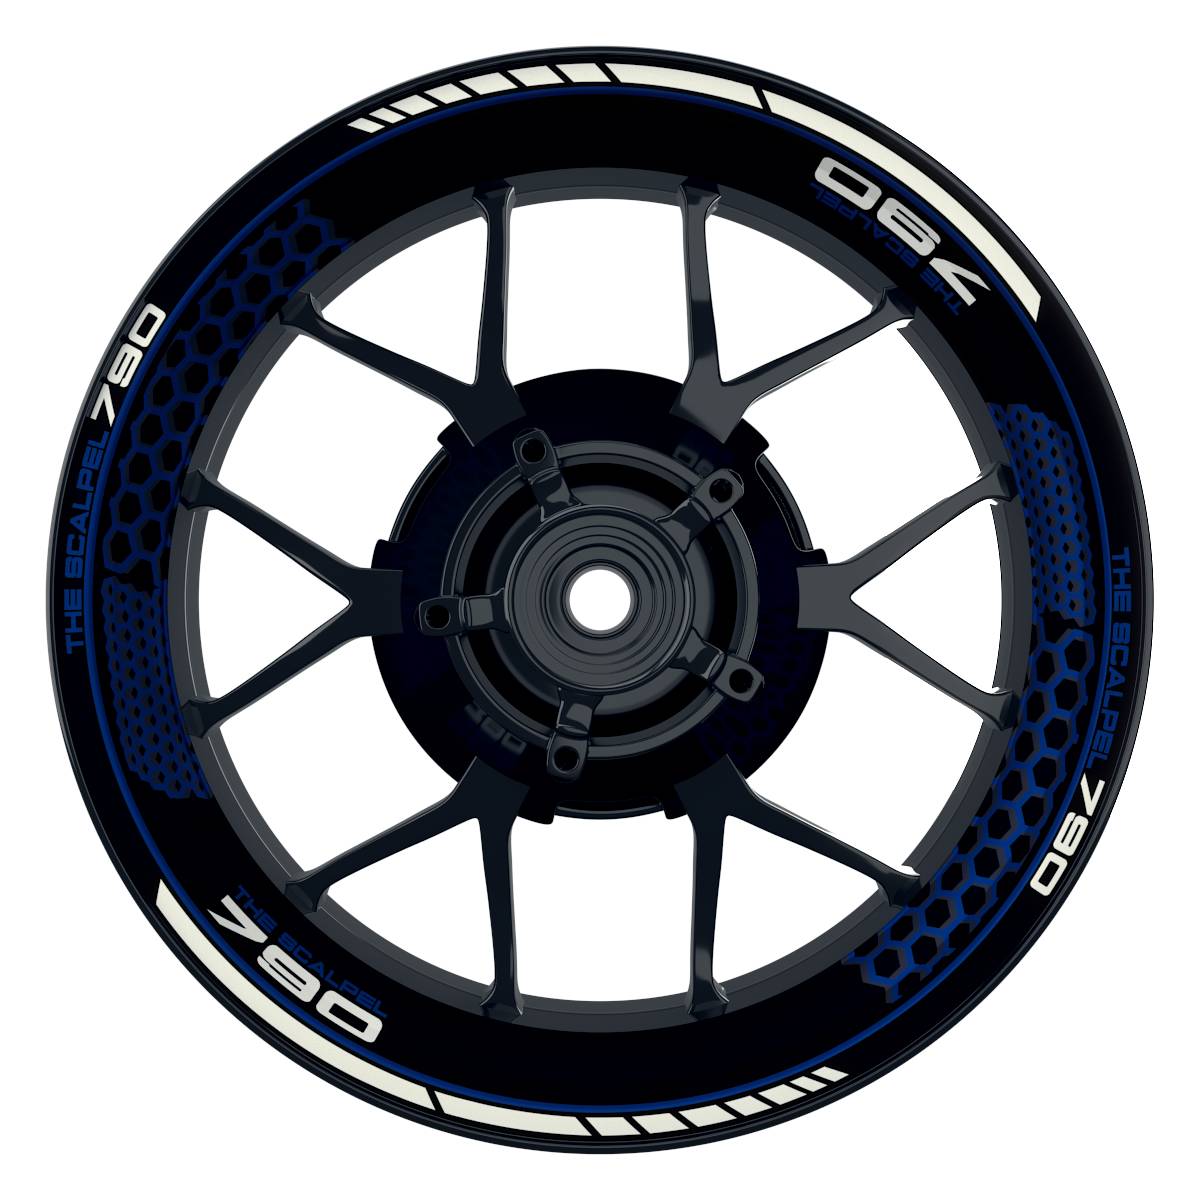 THE SCALPEL 790 Hexagon schwarz blau Wheelsticker Felgenaufkleber